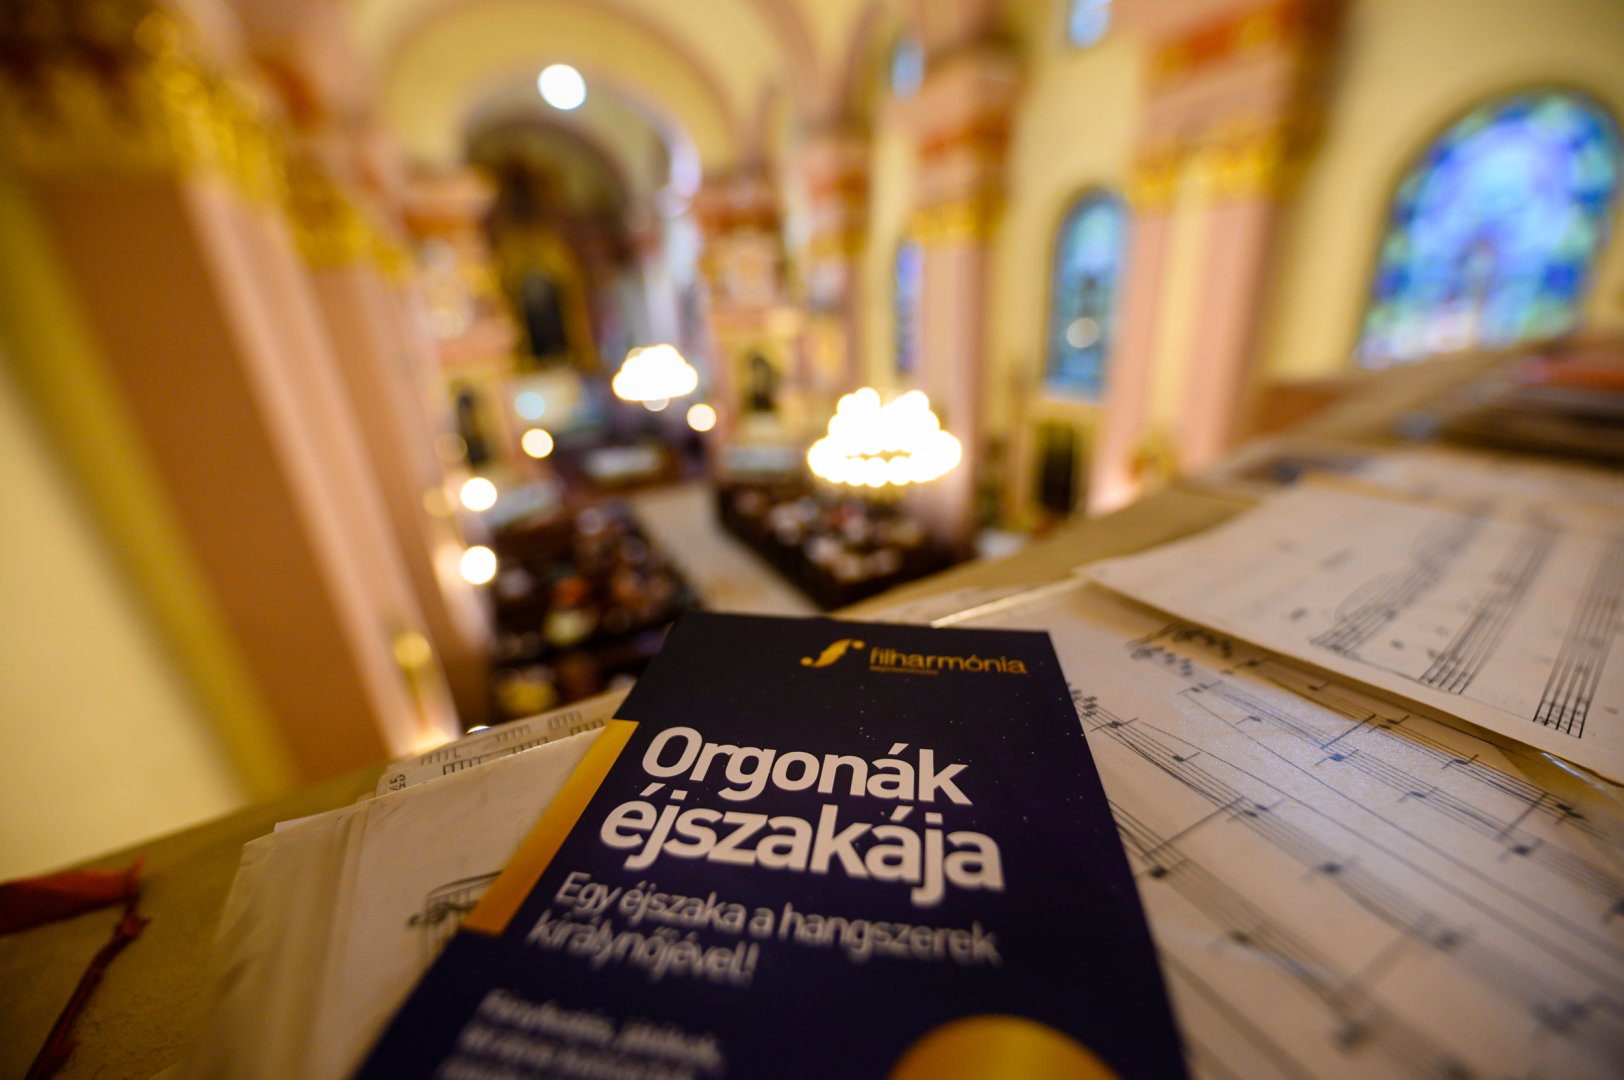 Orgonák Éjszakája - forrás: Filharmónia Magyarország